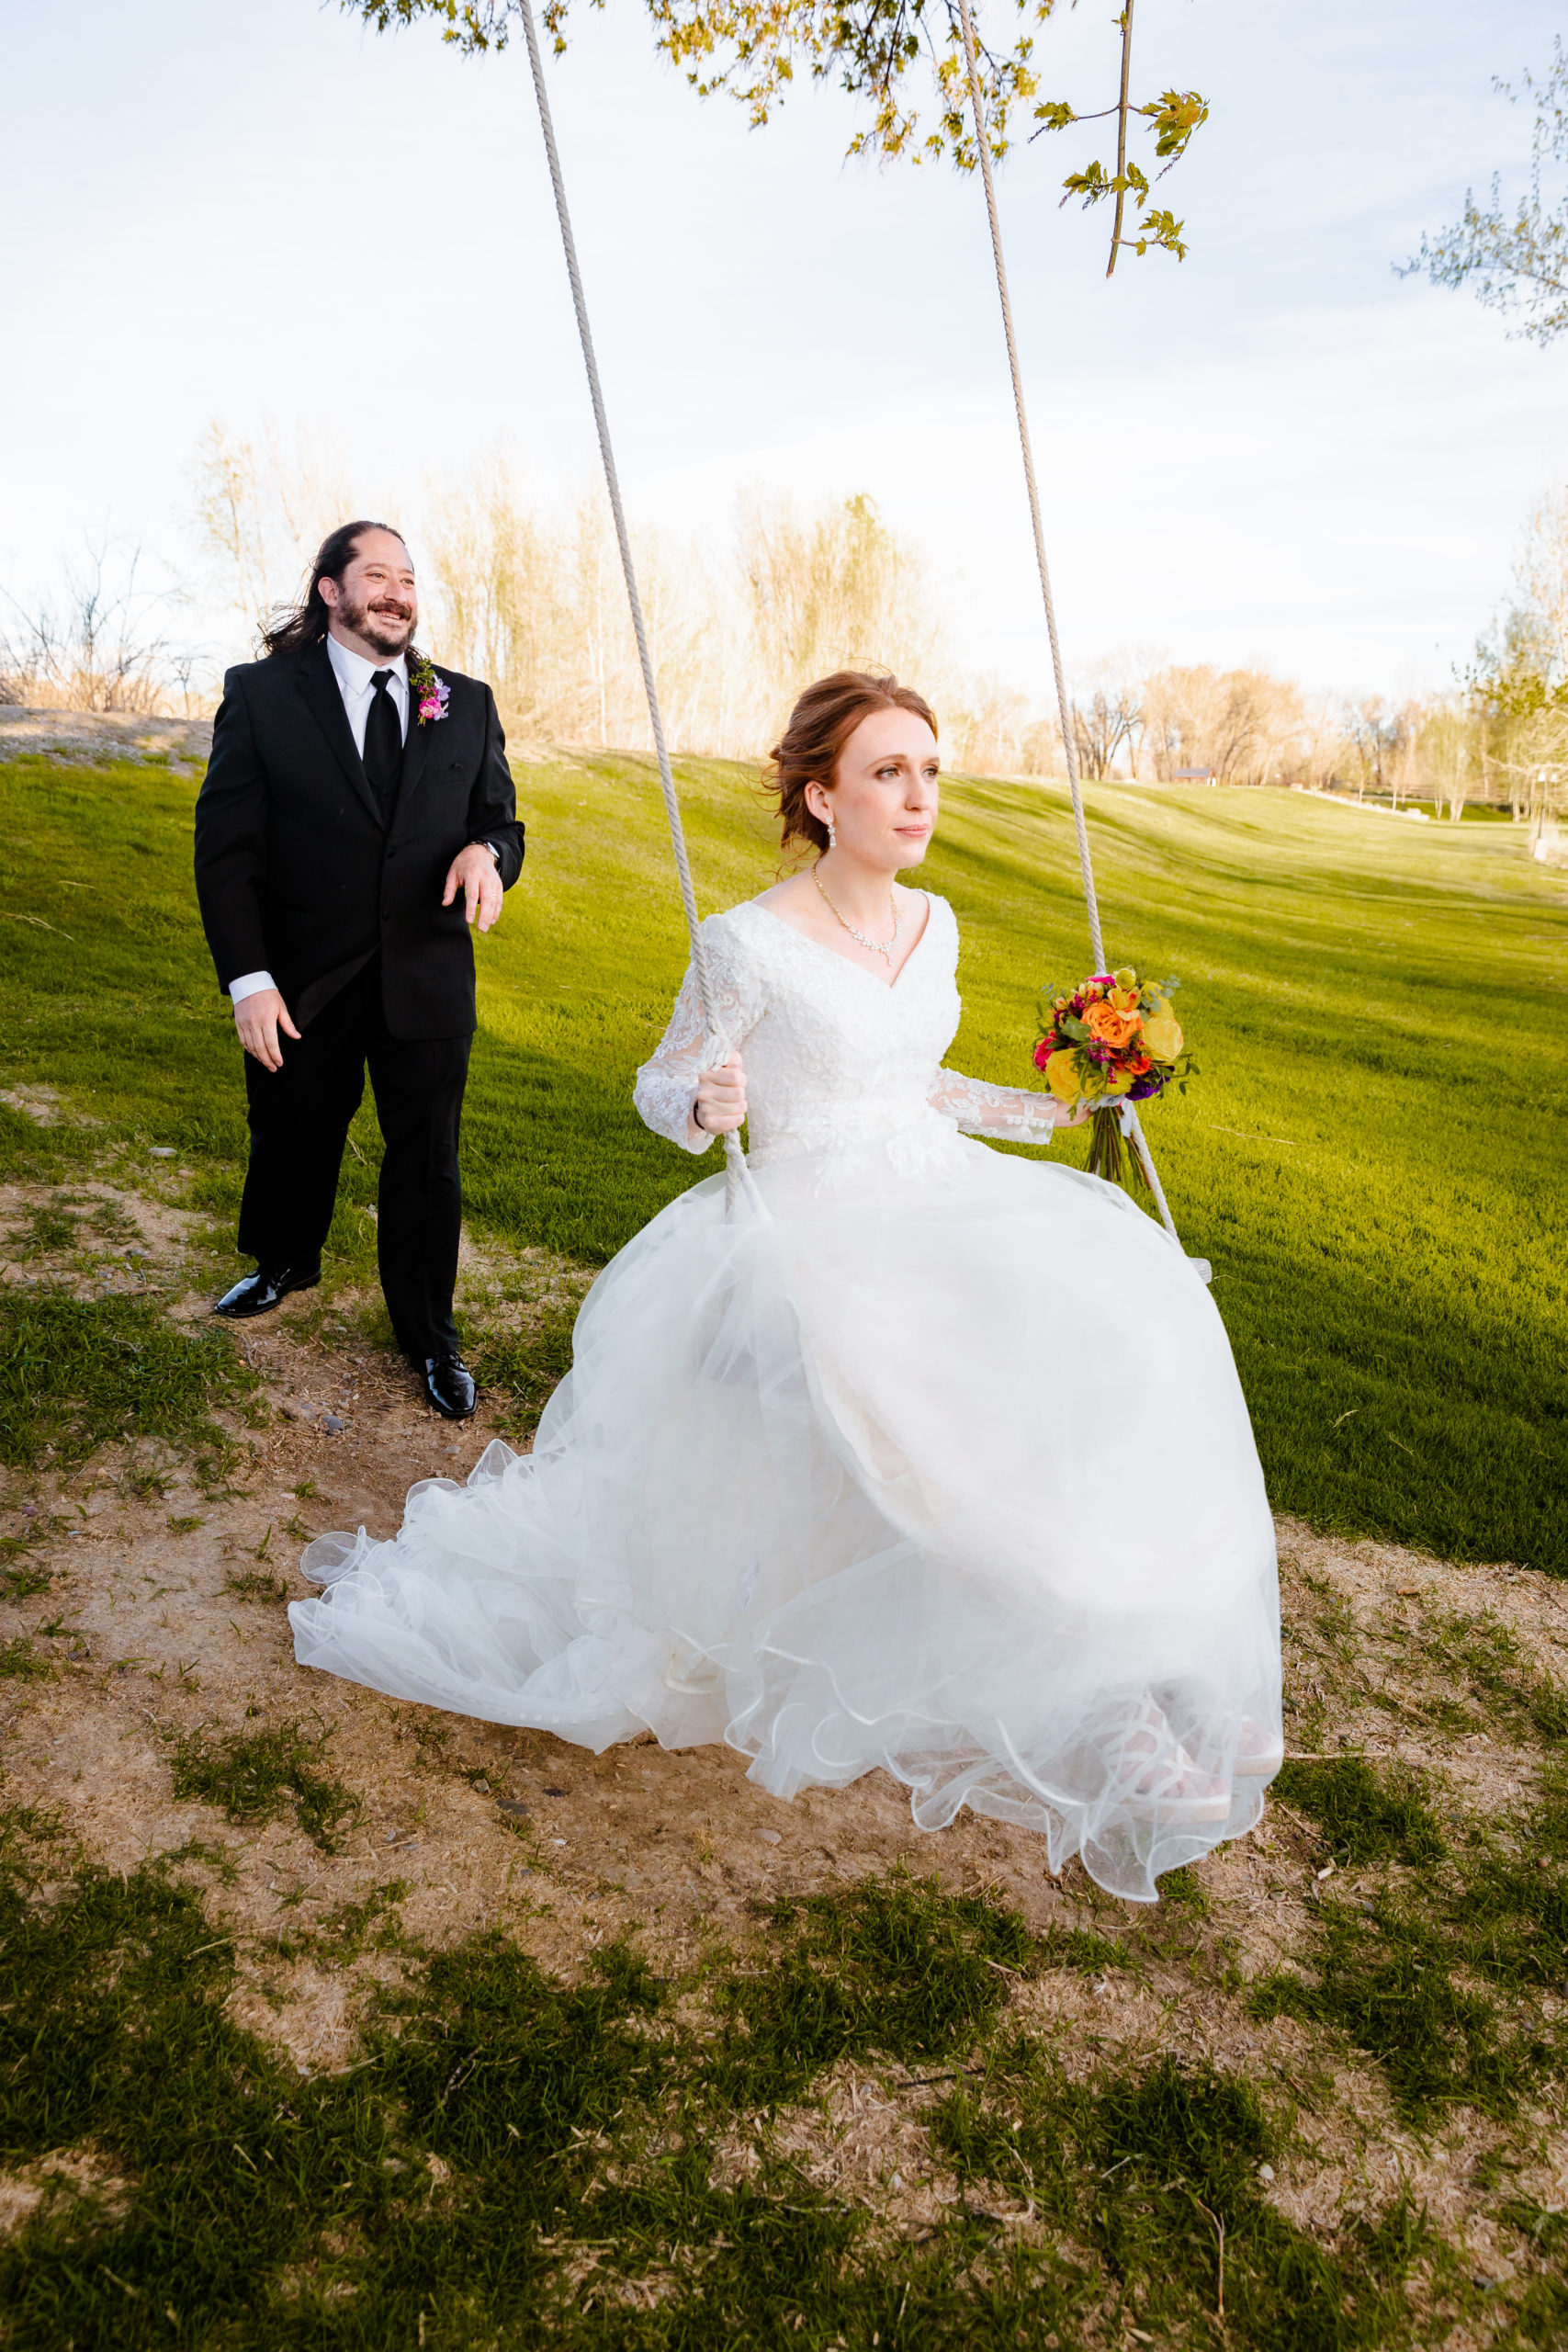 groom pushing bride on swing